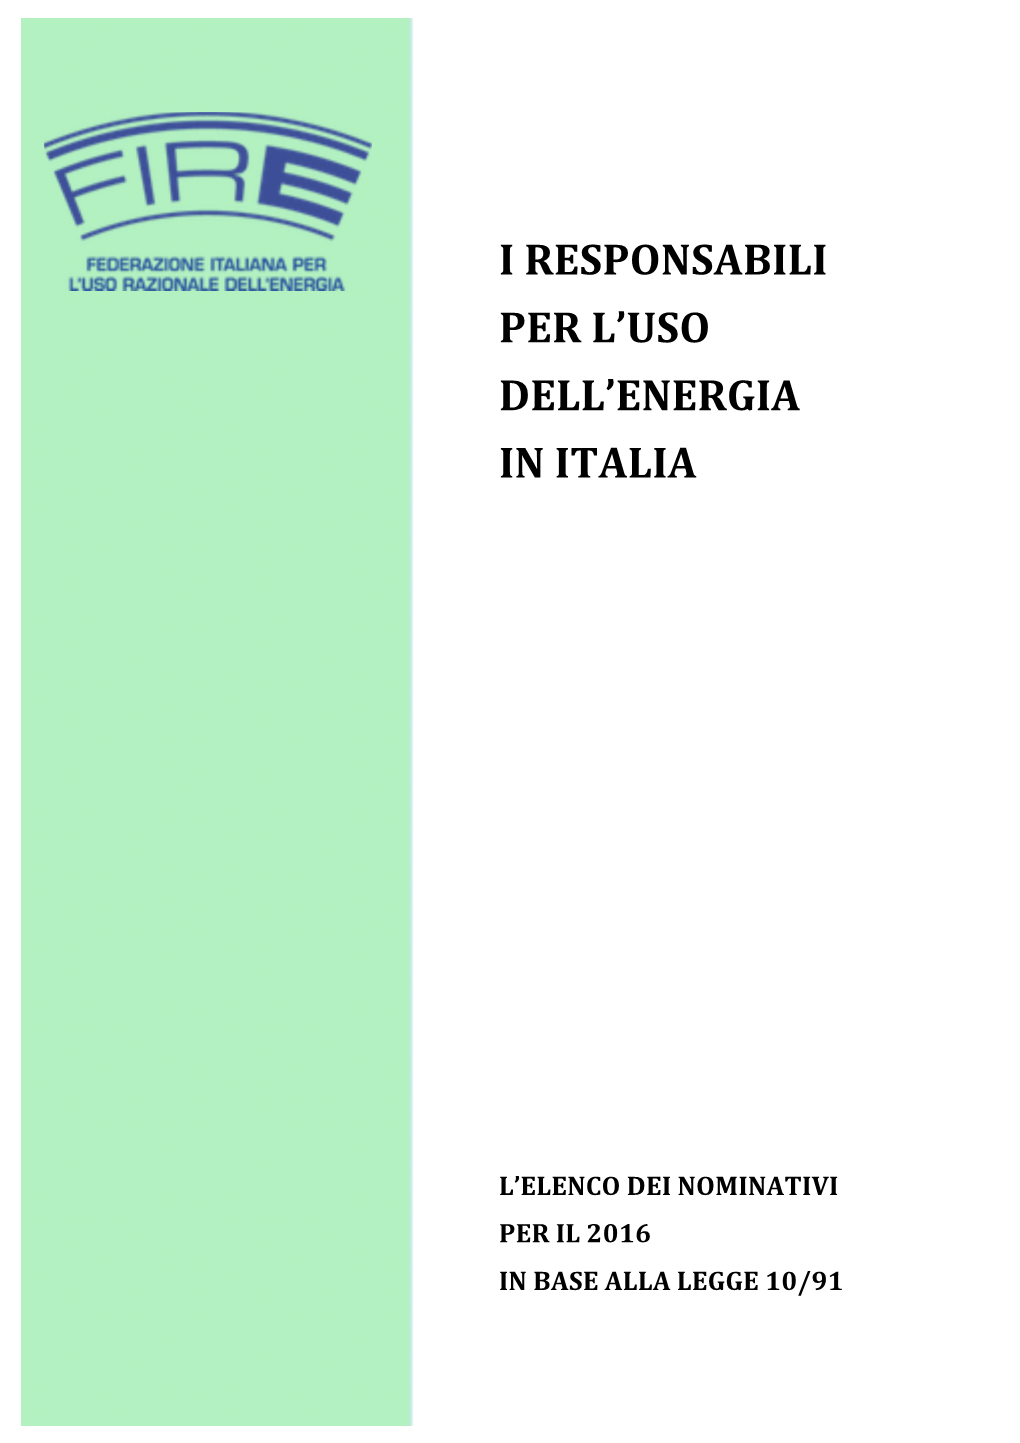 I Responsabili Per L'uso Dell'energia in Italia